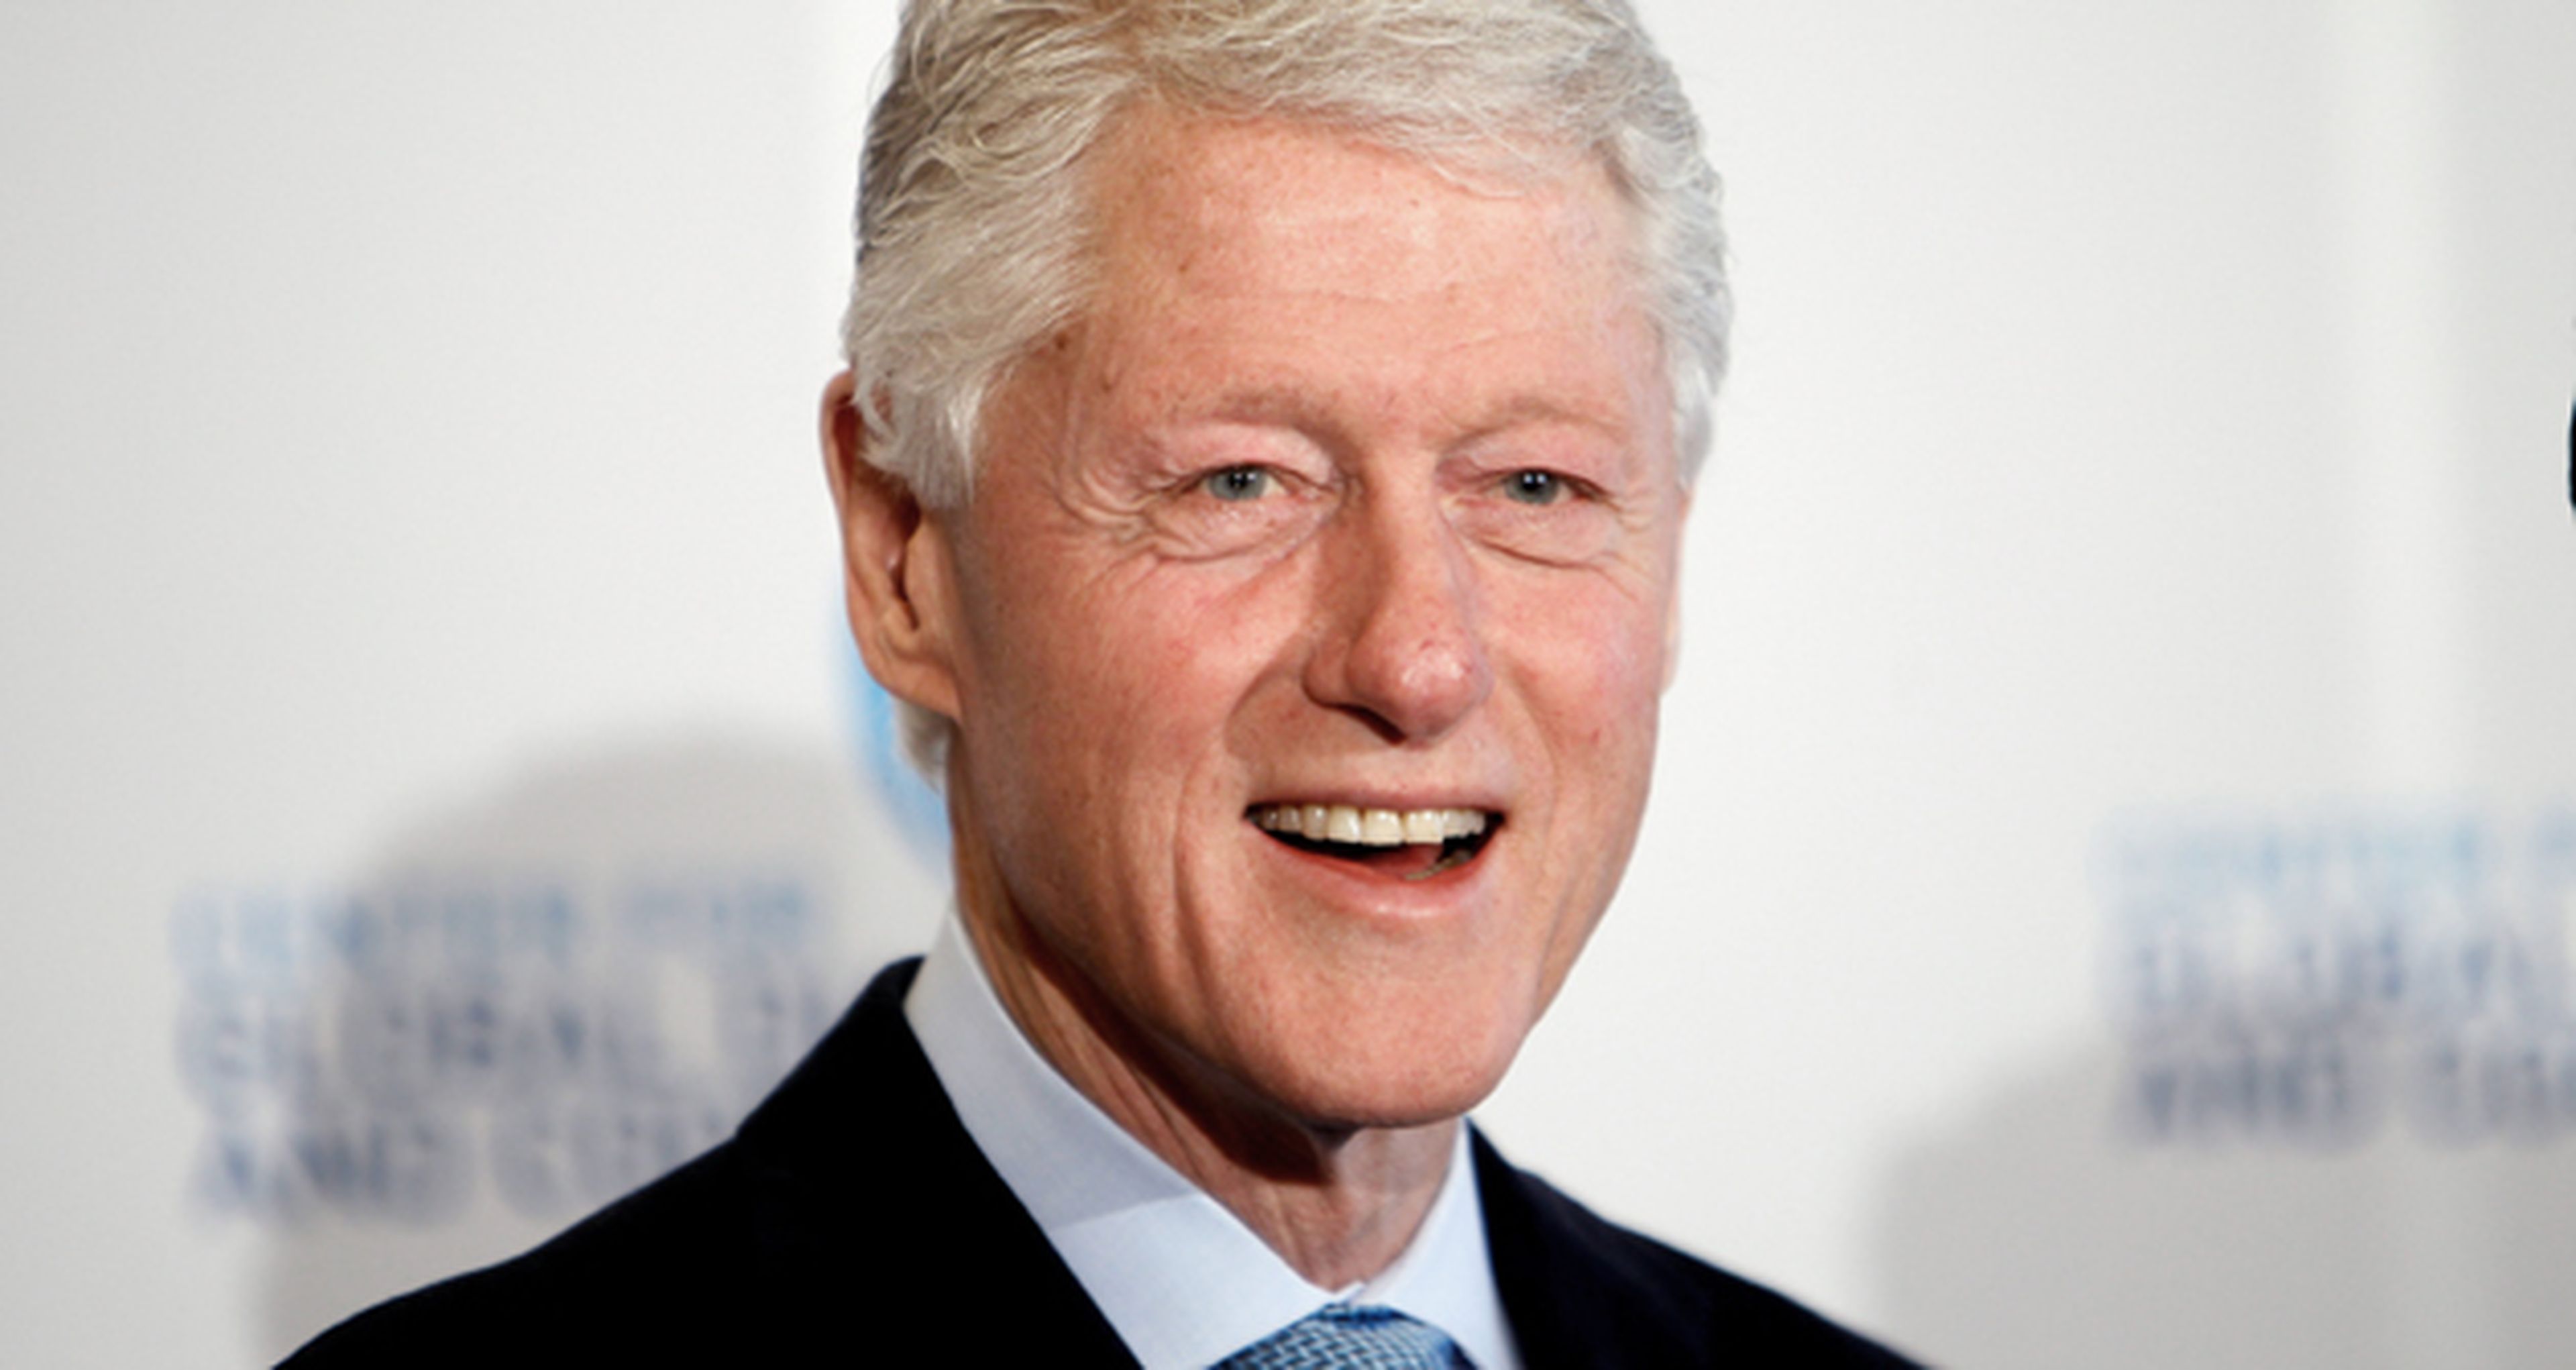 ¿Bill Clinton en Los mercenarios 3?